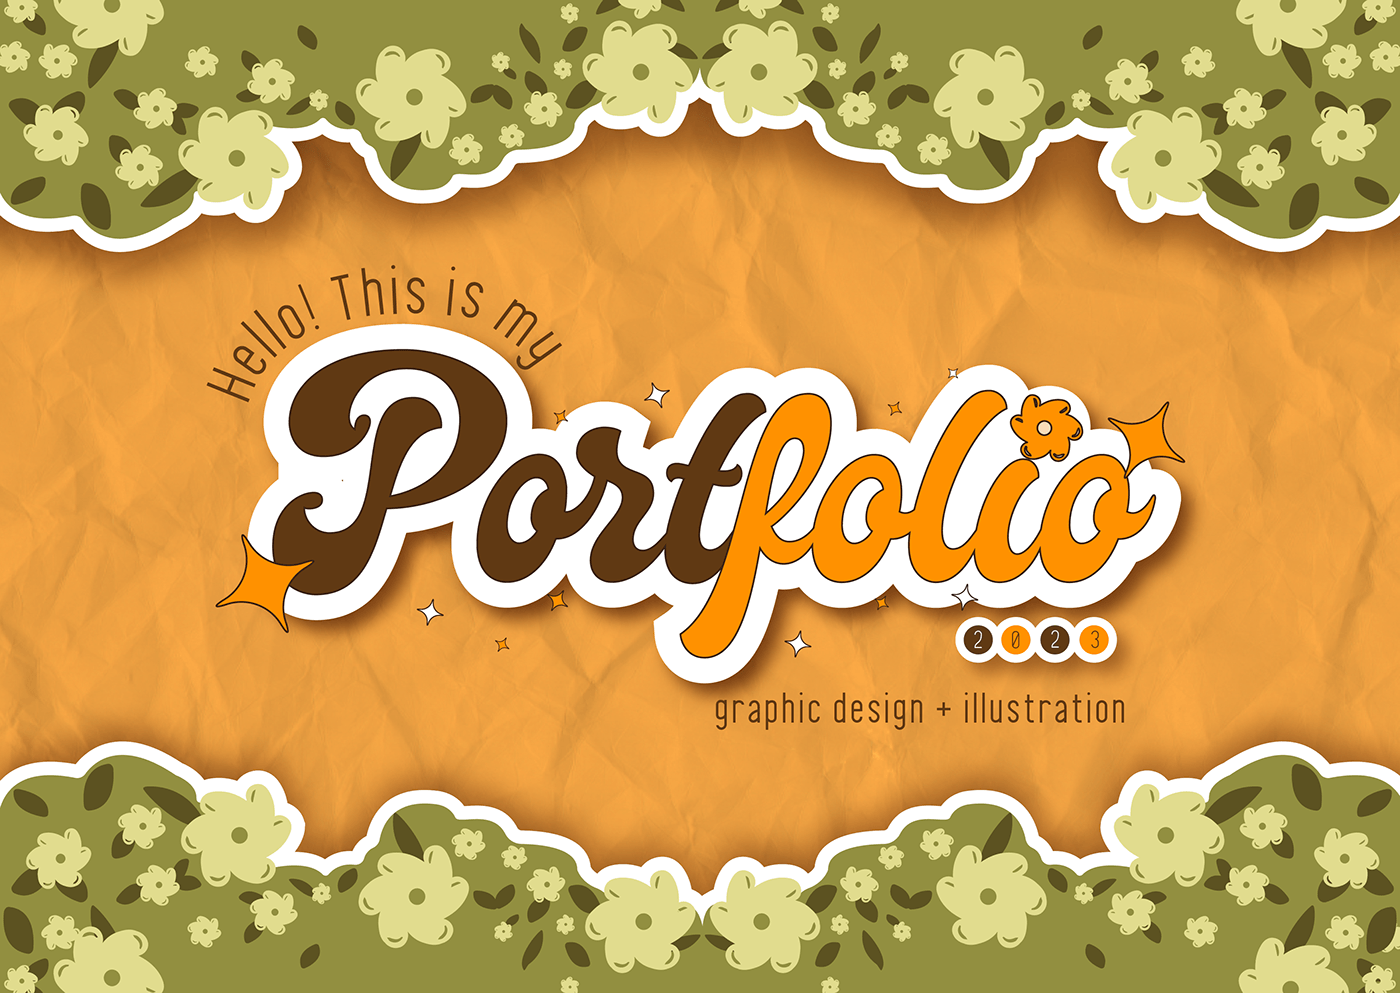 portfolio adobe illustrator graphic design  Graphic Designer Illustrator Portfolio Design UI/UX branding  CV Resume Curriculum Vitae